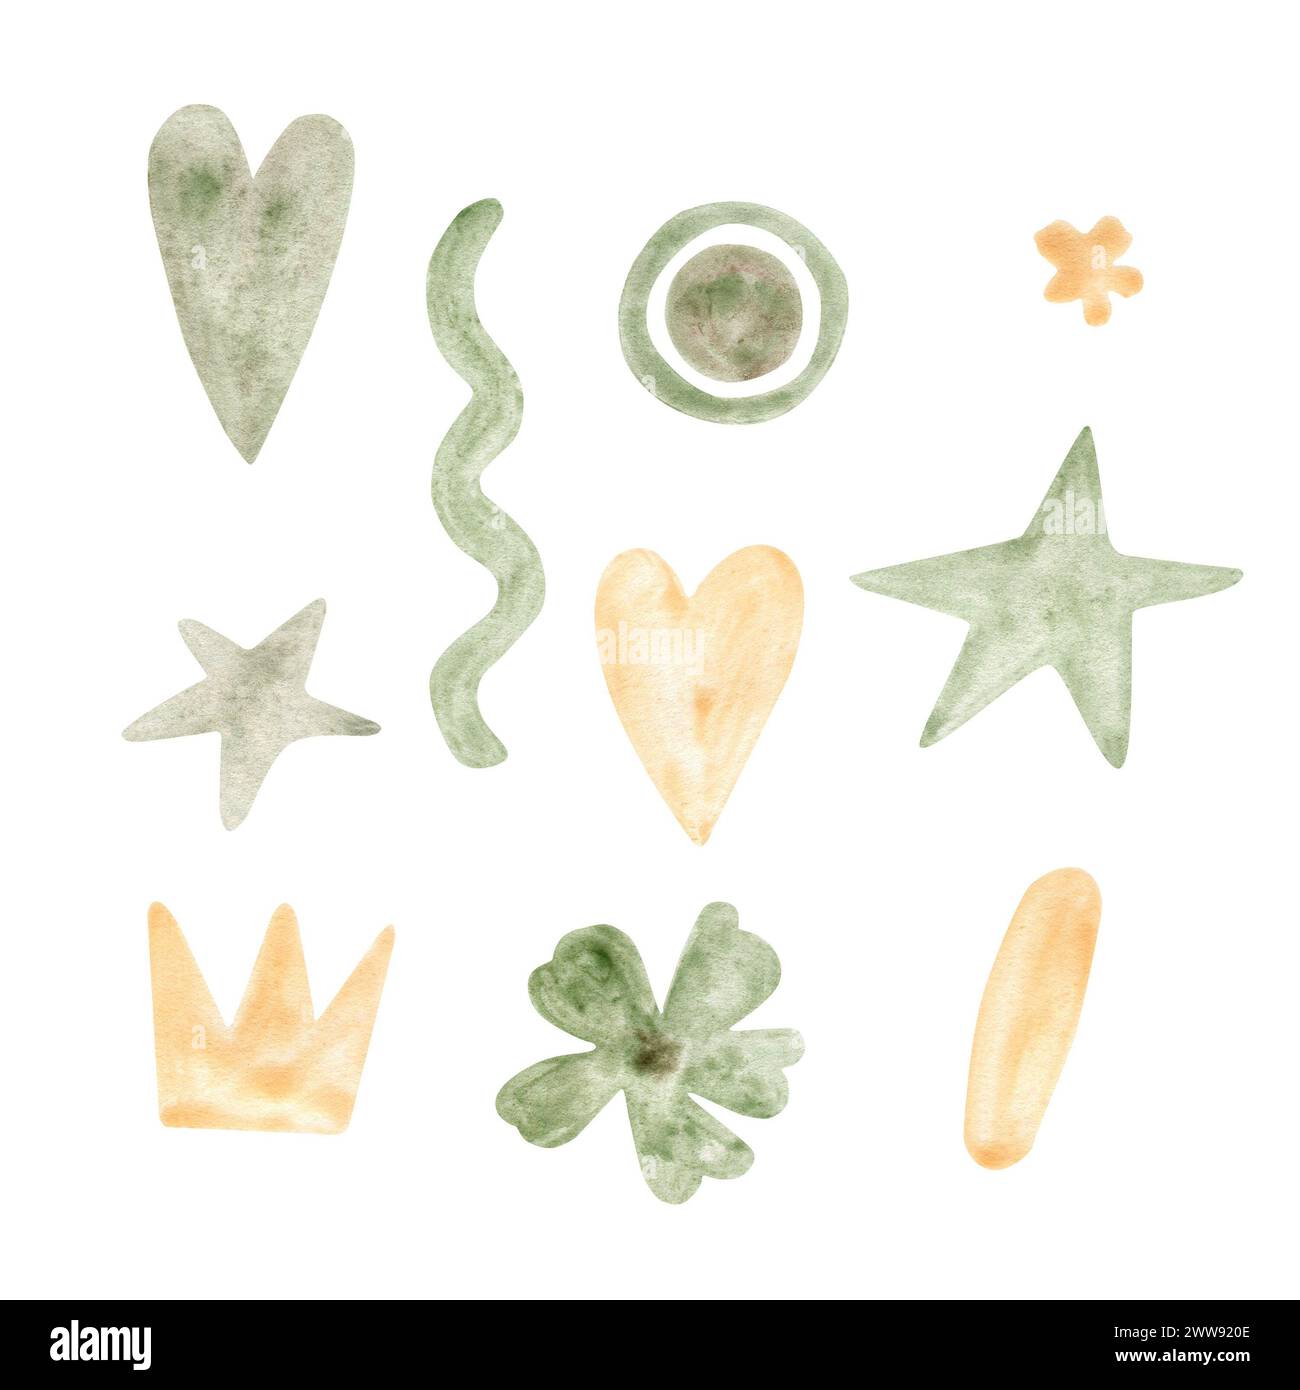 Aquarellfarben hellgrün und gelb abstrakte handgezeichnete Elemente für Ihr Design Stockfoto